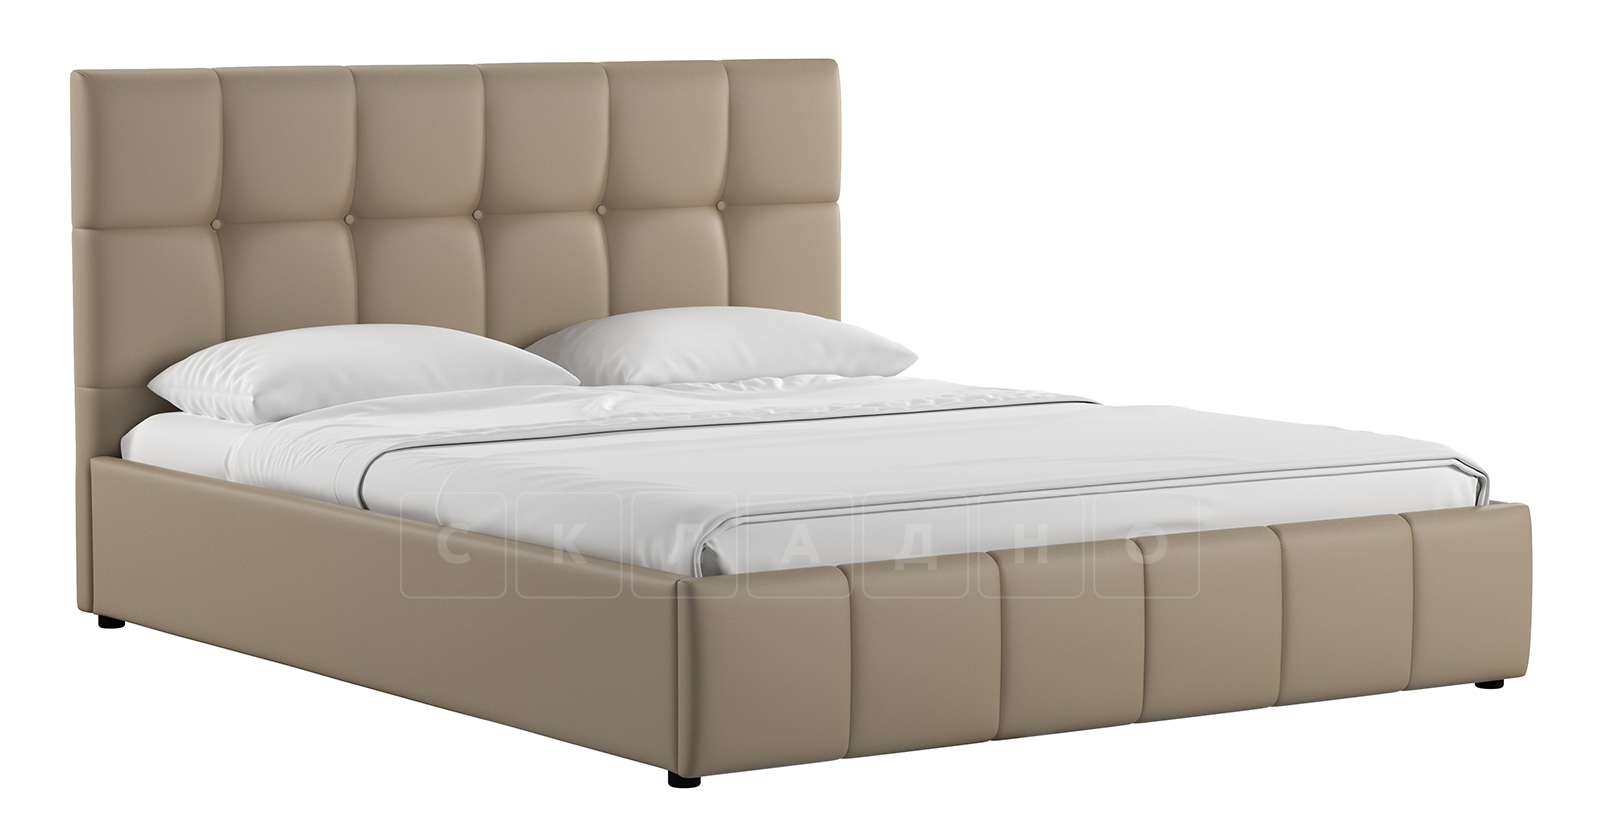 Мягкая кровать Хлоя 160 см капучино с подъемным механизмом фото 1 | интернет-магазин Складно